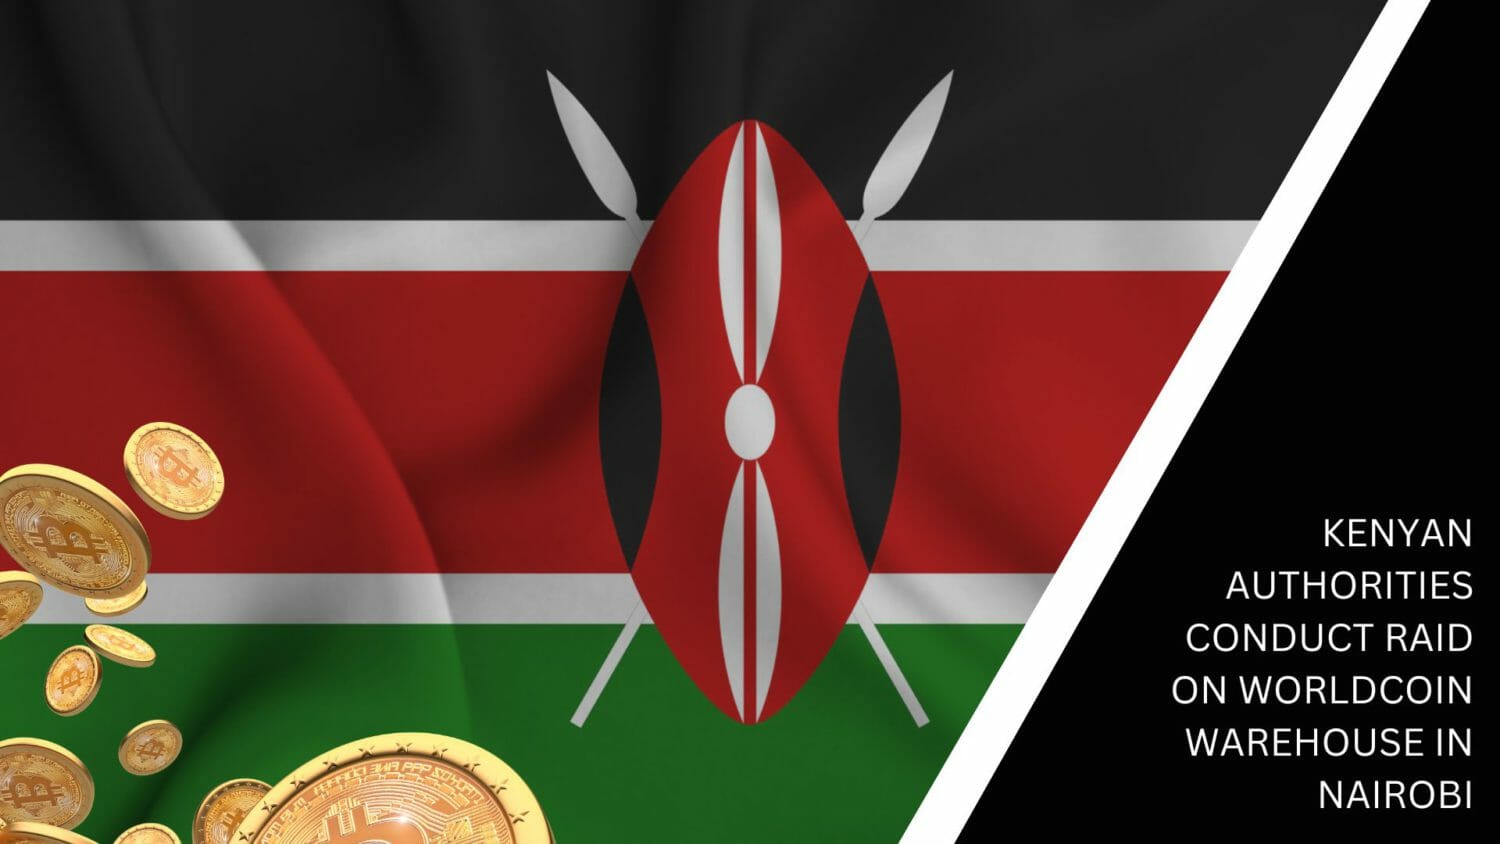 Kenyan Authorities Conduct Raid On Worldcoin Warehouse In Nairobi